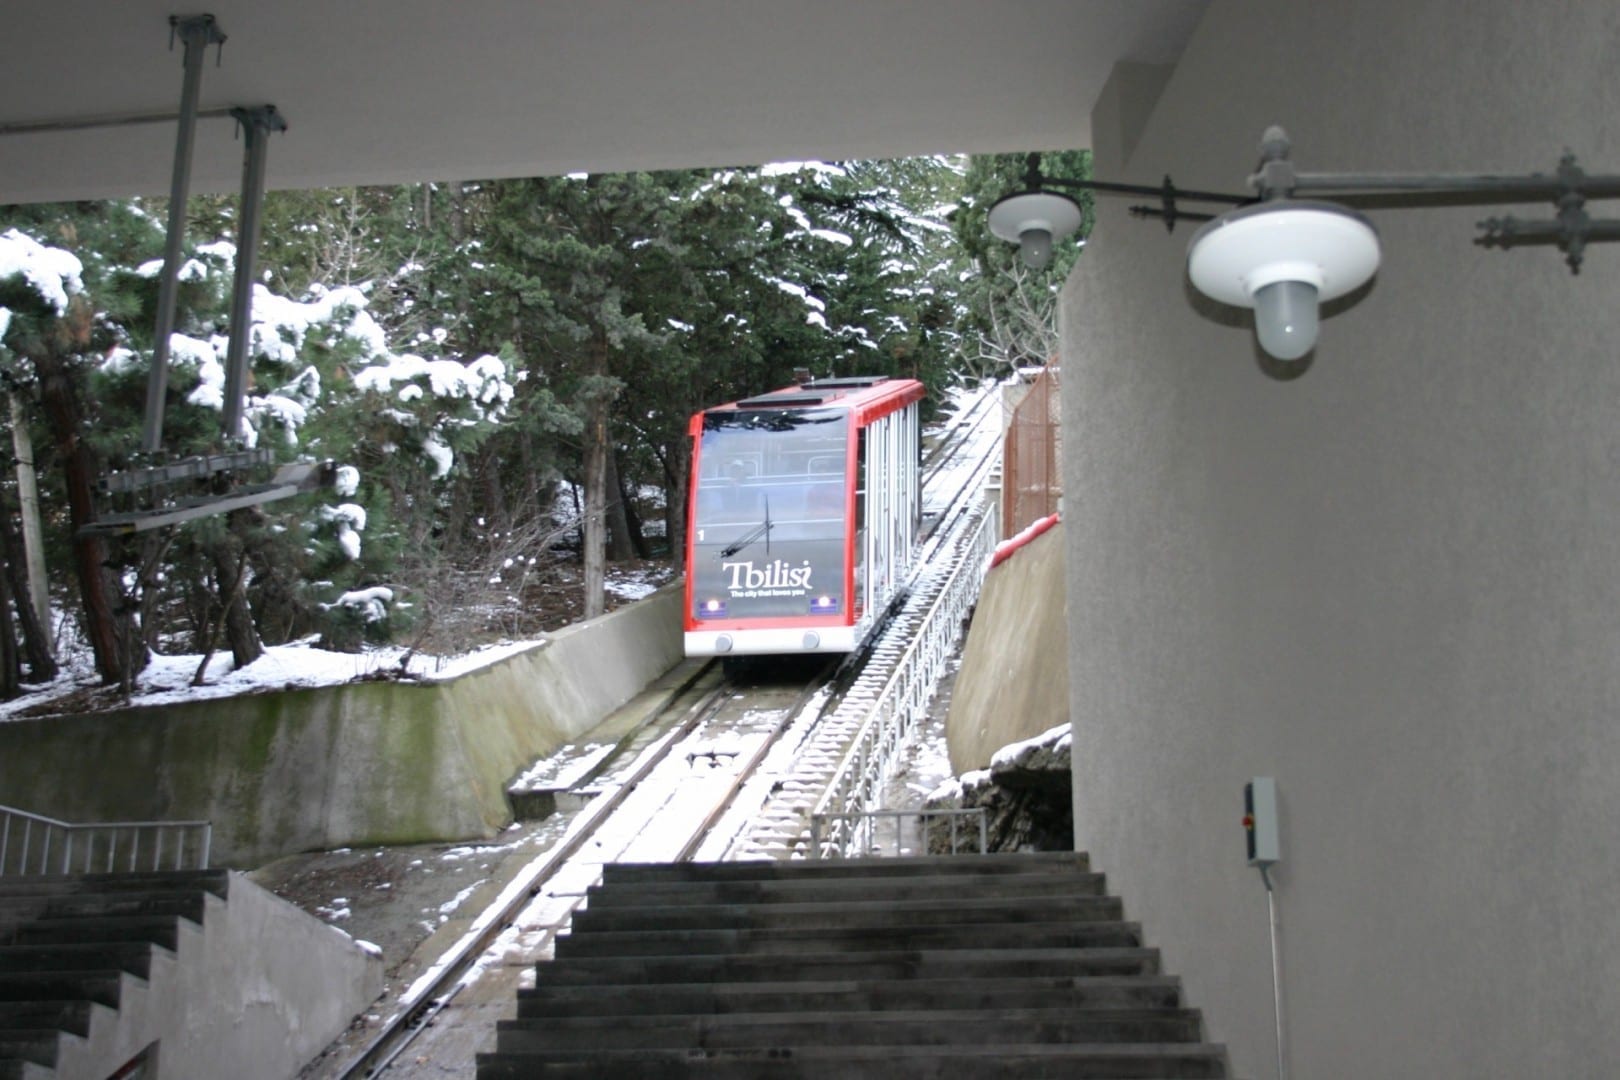 El Funicular reabrió en diciembre de 2012 Tiflis Georgia